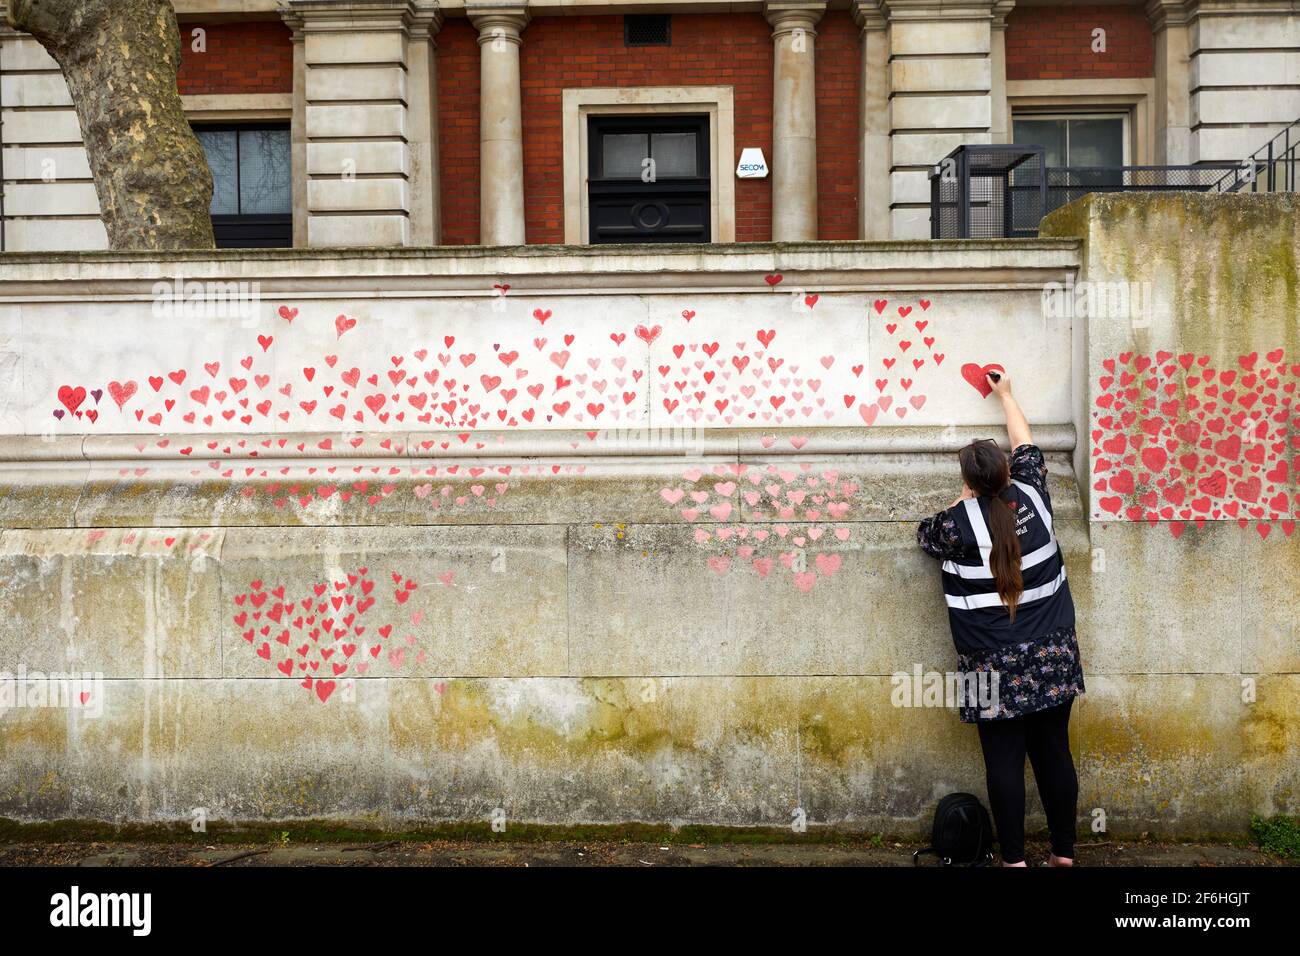 Londres, Royaume-Uni - 31 mars 2021 : la famille et les amis des victimes de Covid-19 peignent des coeurs rouges au mur commémoratif national de Covid, en face de l'hôpital St. Thomas, dans le centre de Londres. Chaque cœur tiré individuellement représente une victime du coronavirus. Banque D'Images